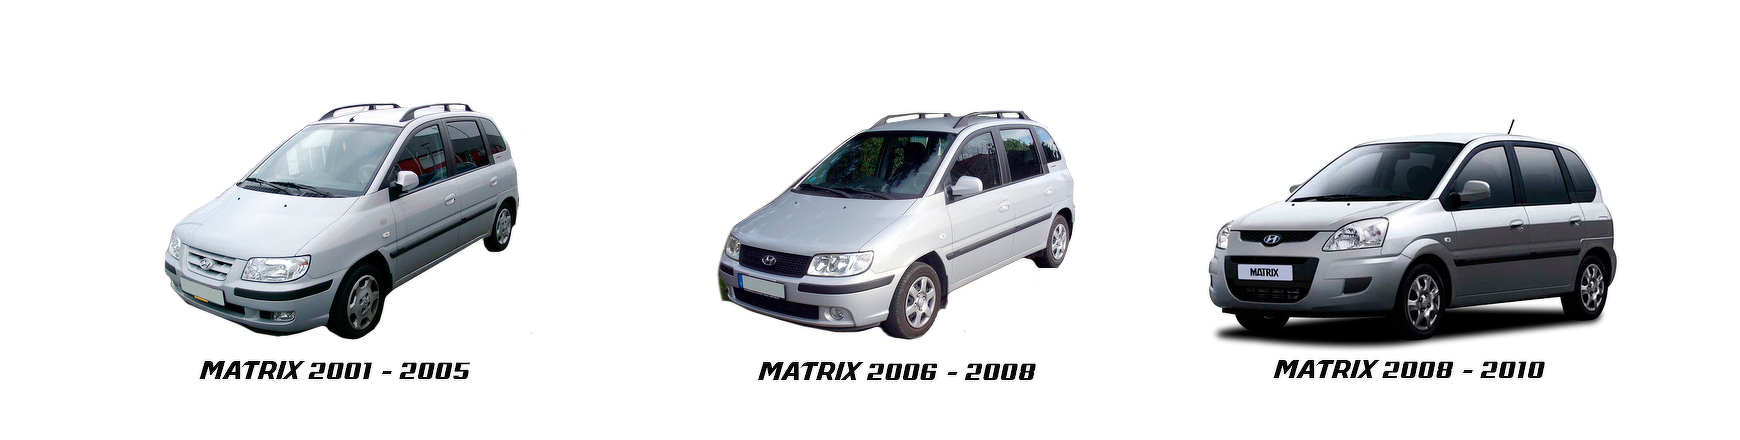 Piezas y Recambios de Hyundai Matric (FC) de 2008 a 2010 | Veramauto.es